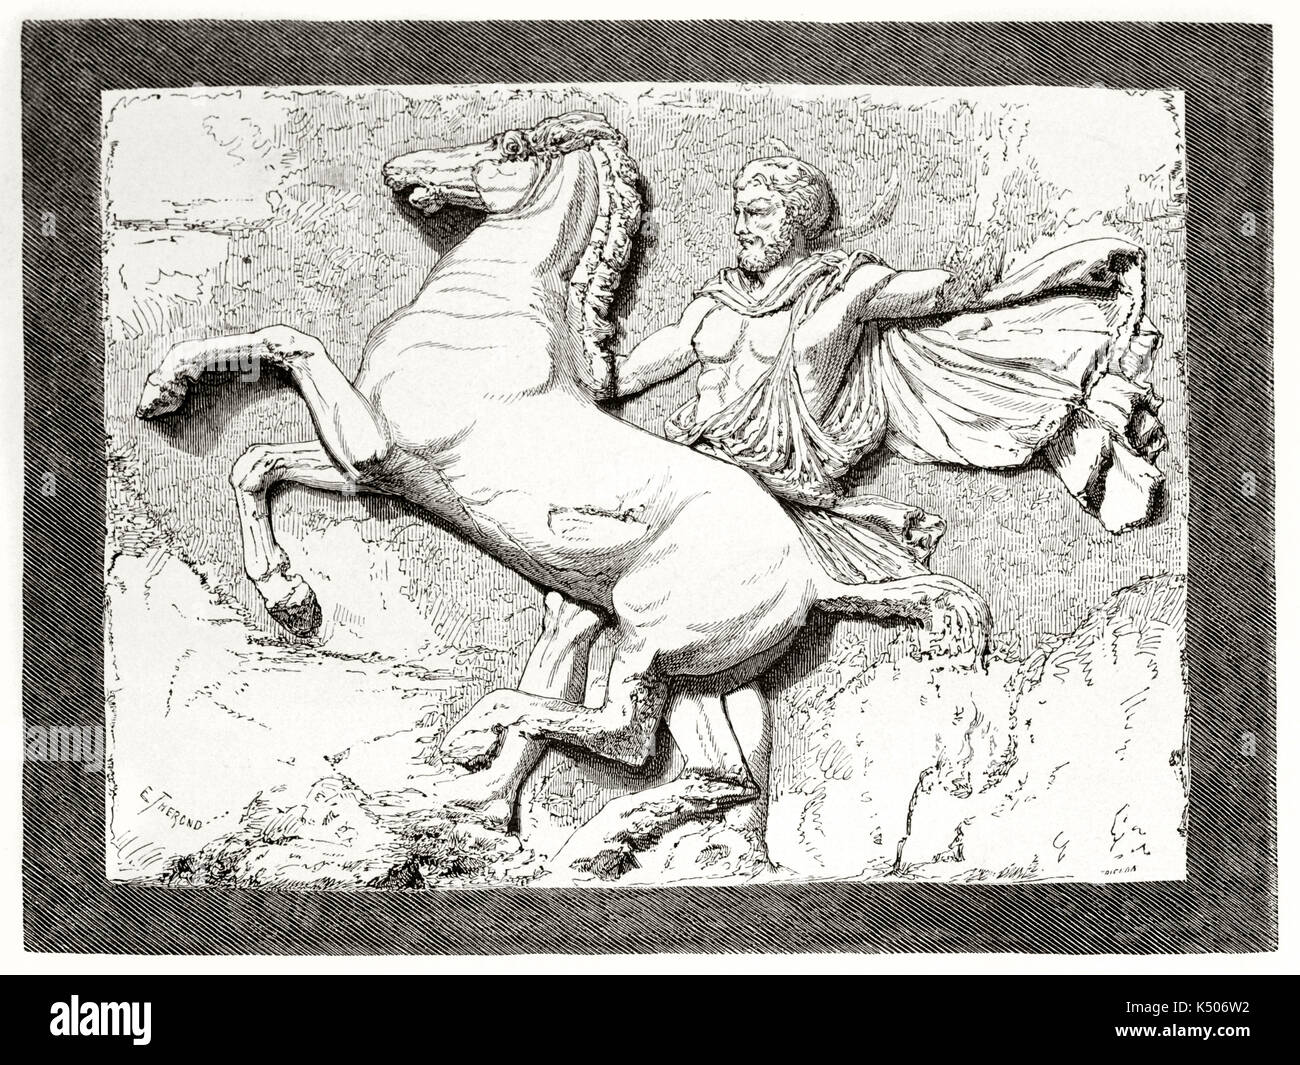 Alte graviert Reproduktion von einem hochrelief metope Skulptur von Phidias im Parthenon Athen einen Mann und eine Aufzucht Pferd. Durch Therond auf Le Tour du Monde Paris 1862 veröffentlicht. Stockfoto